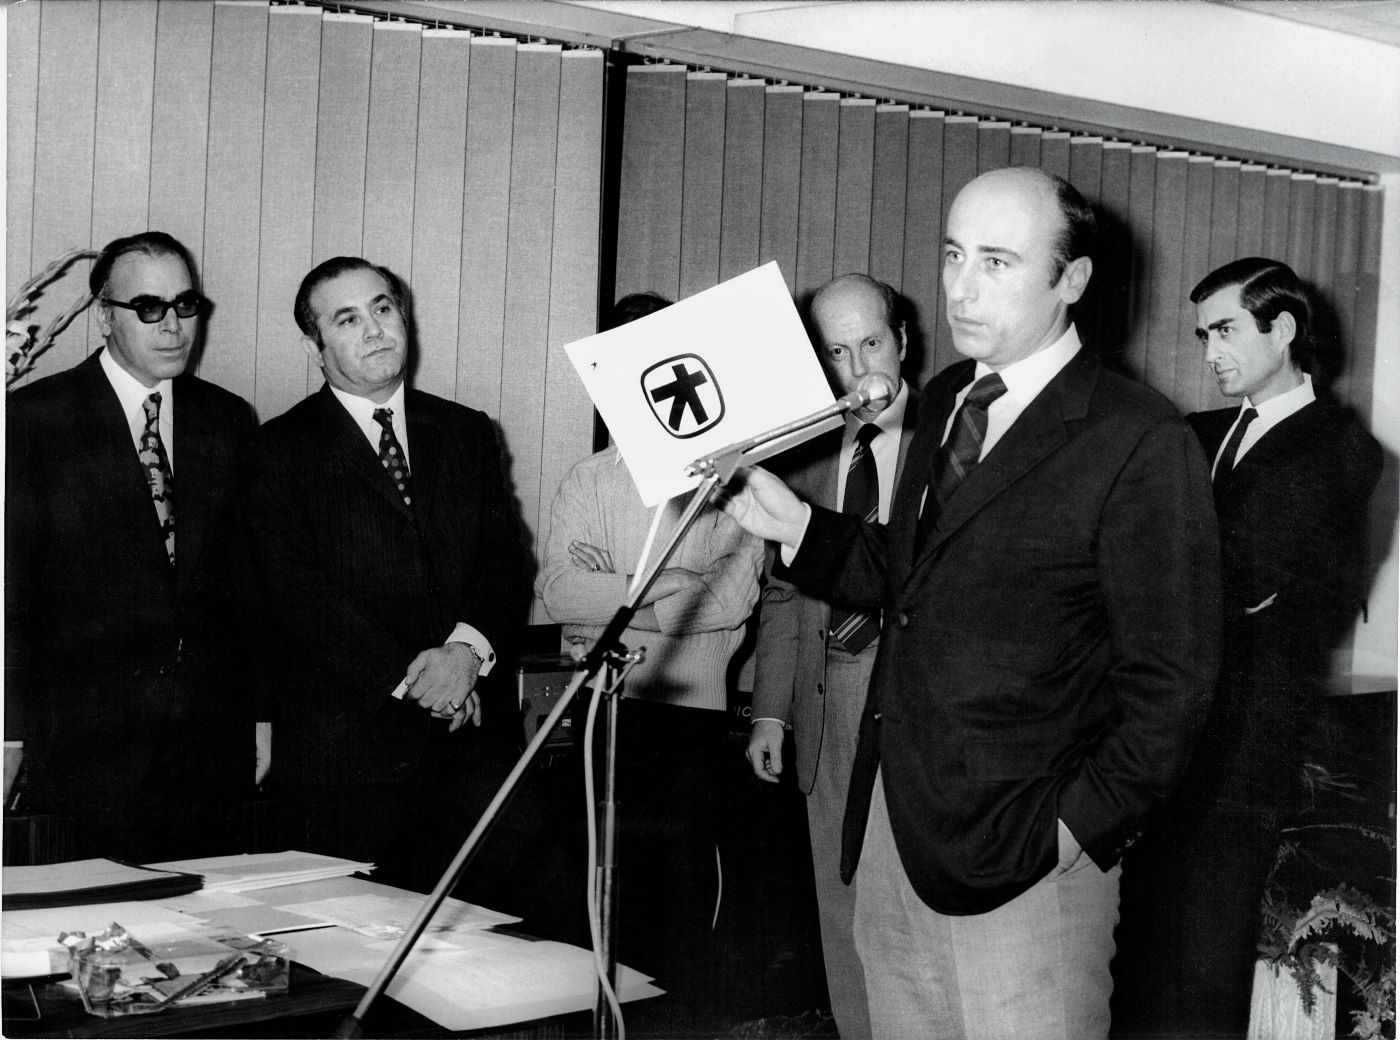 Ο Γιάννης Κωστόπουλος, παρουσιάζει το νέο σήμα της Τράπεζας Πίστεως, 1972